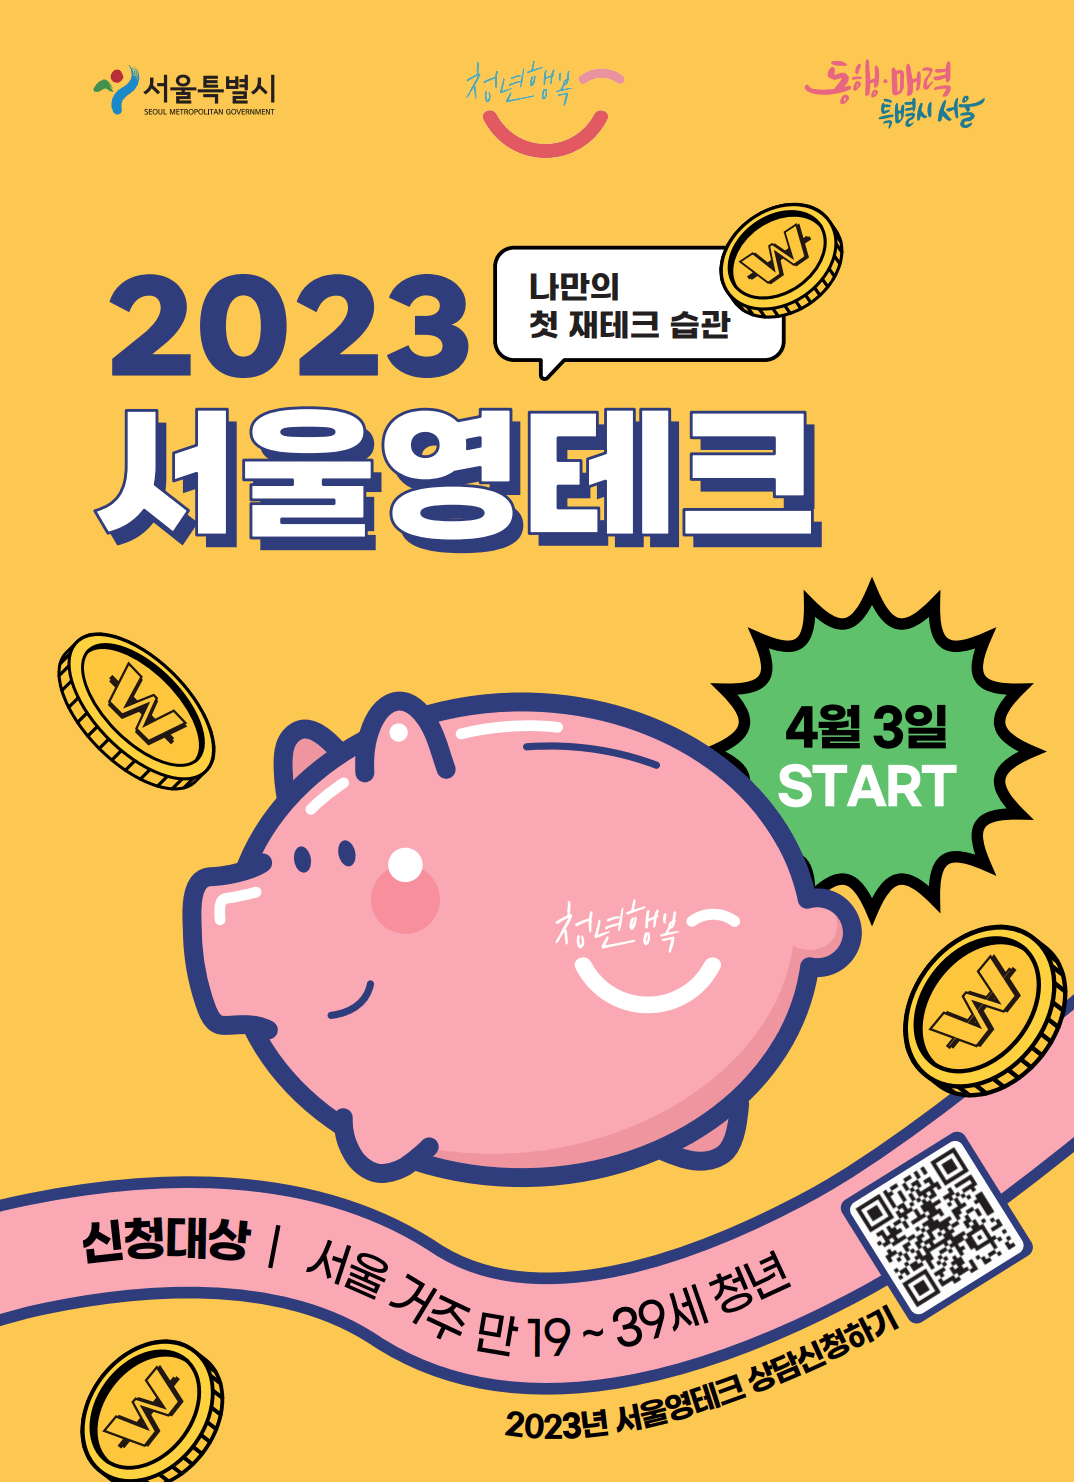 서울 무료 금융교육 사업 영테크